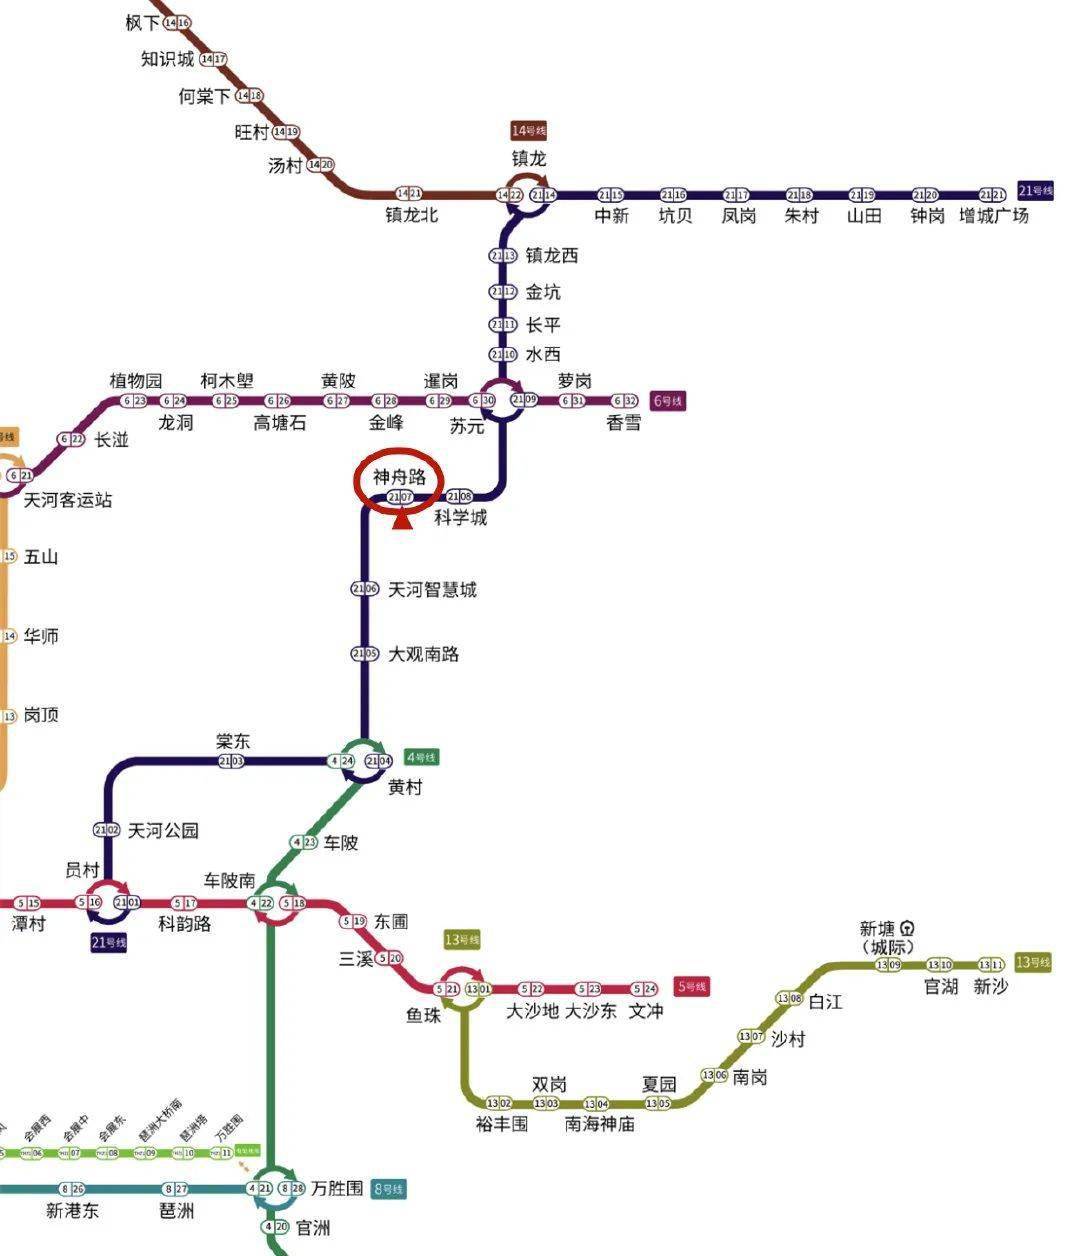 广州地铁23号线 落实图片